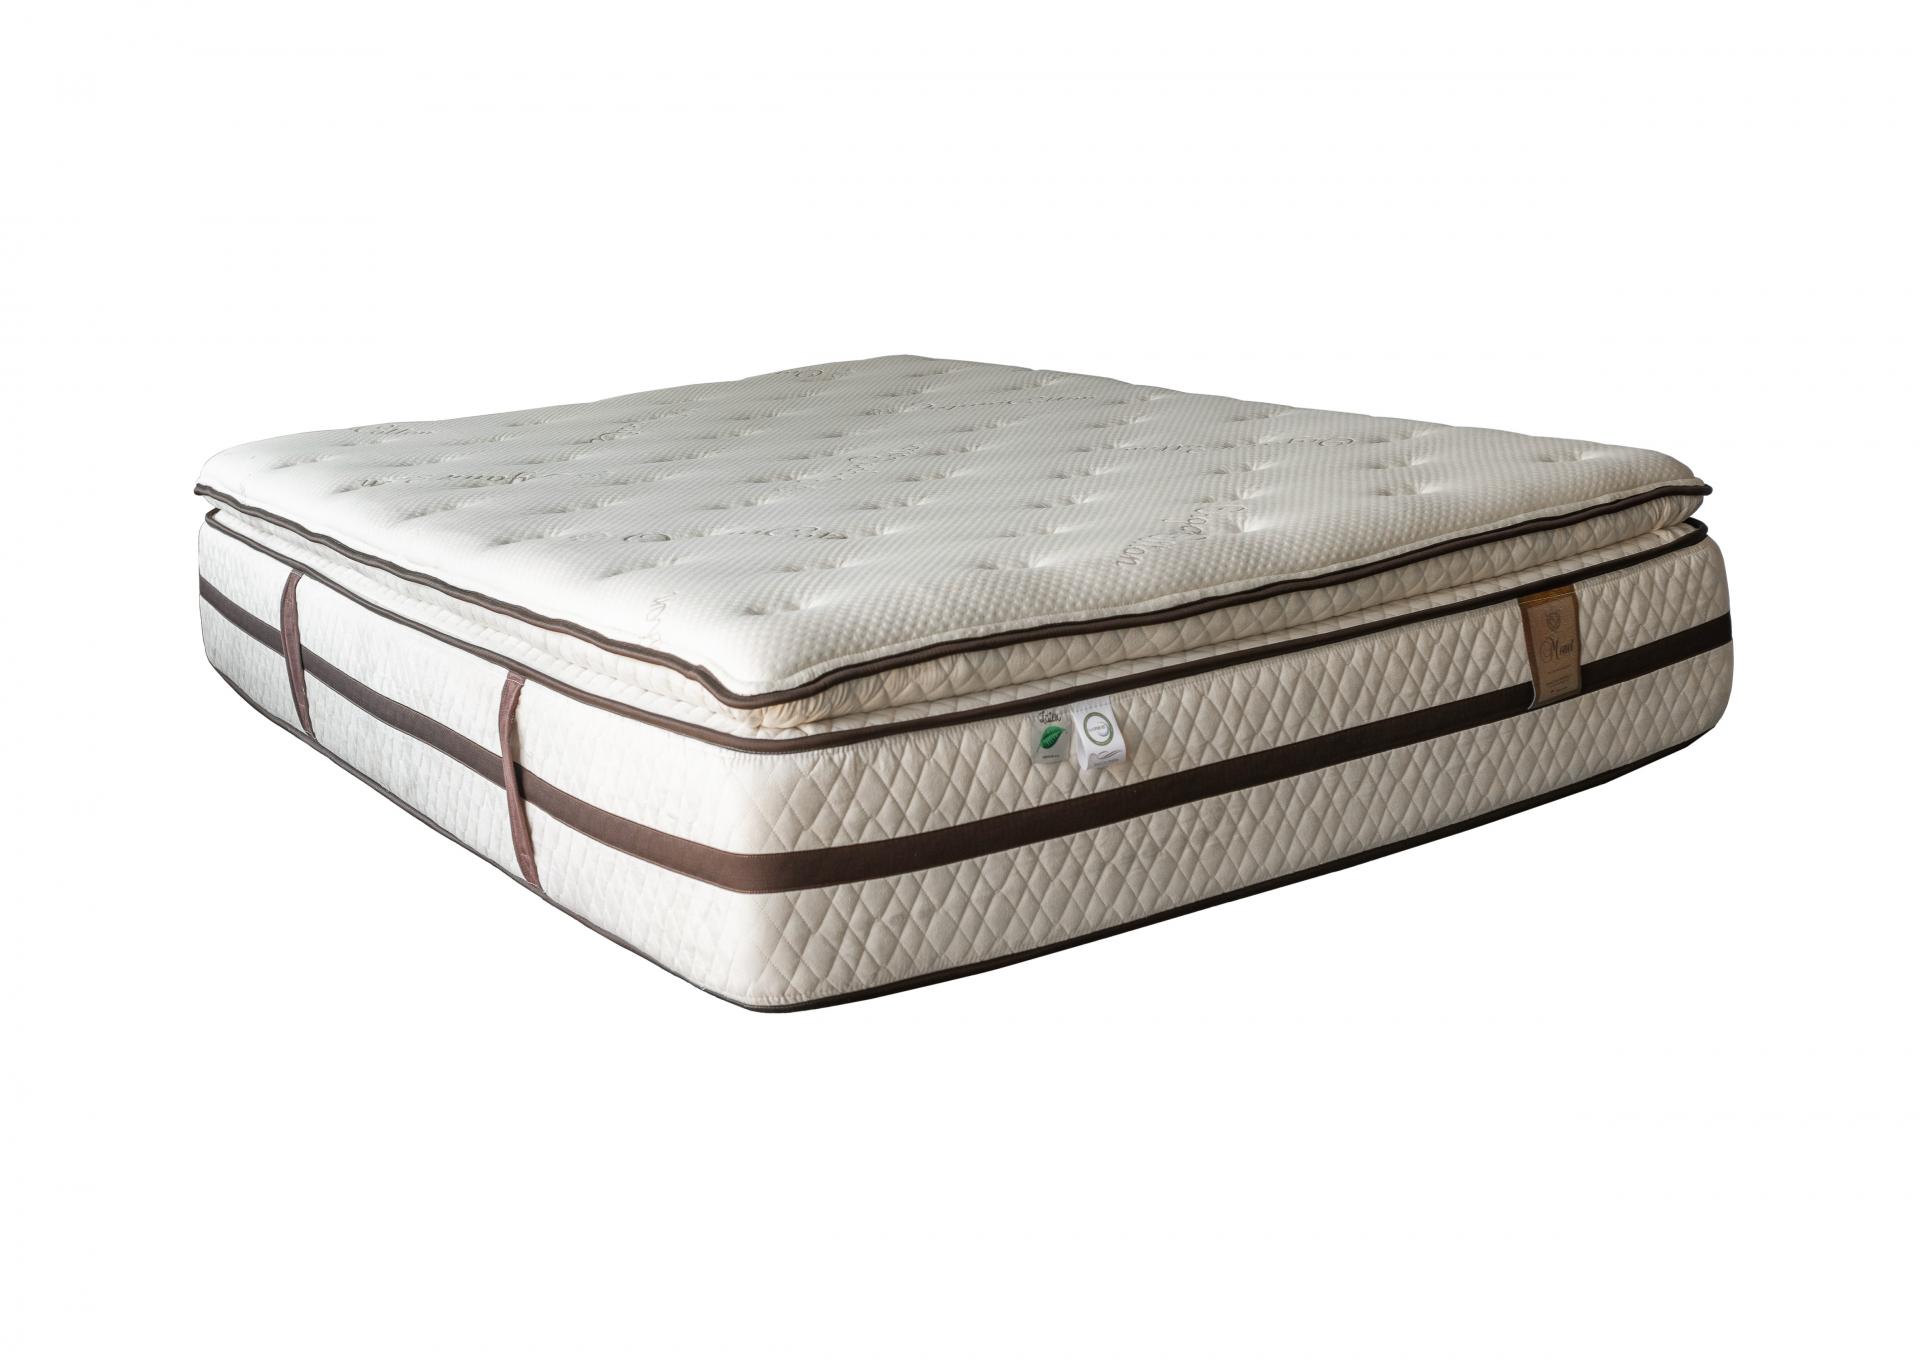 Monet Pillow Top Queen,Bed Post Mattresses 